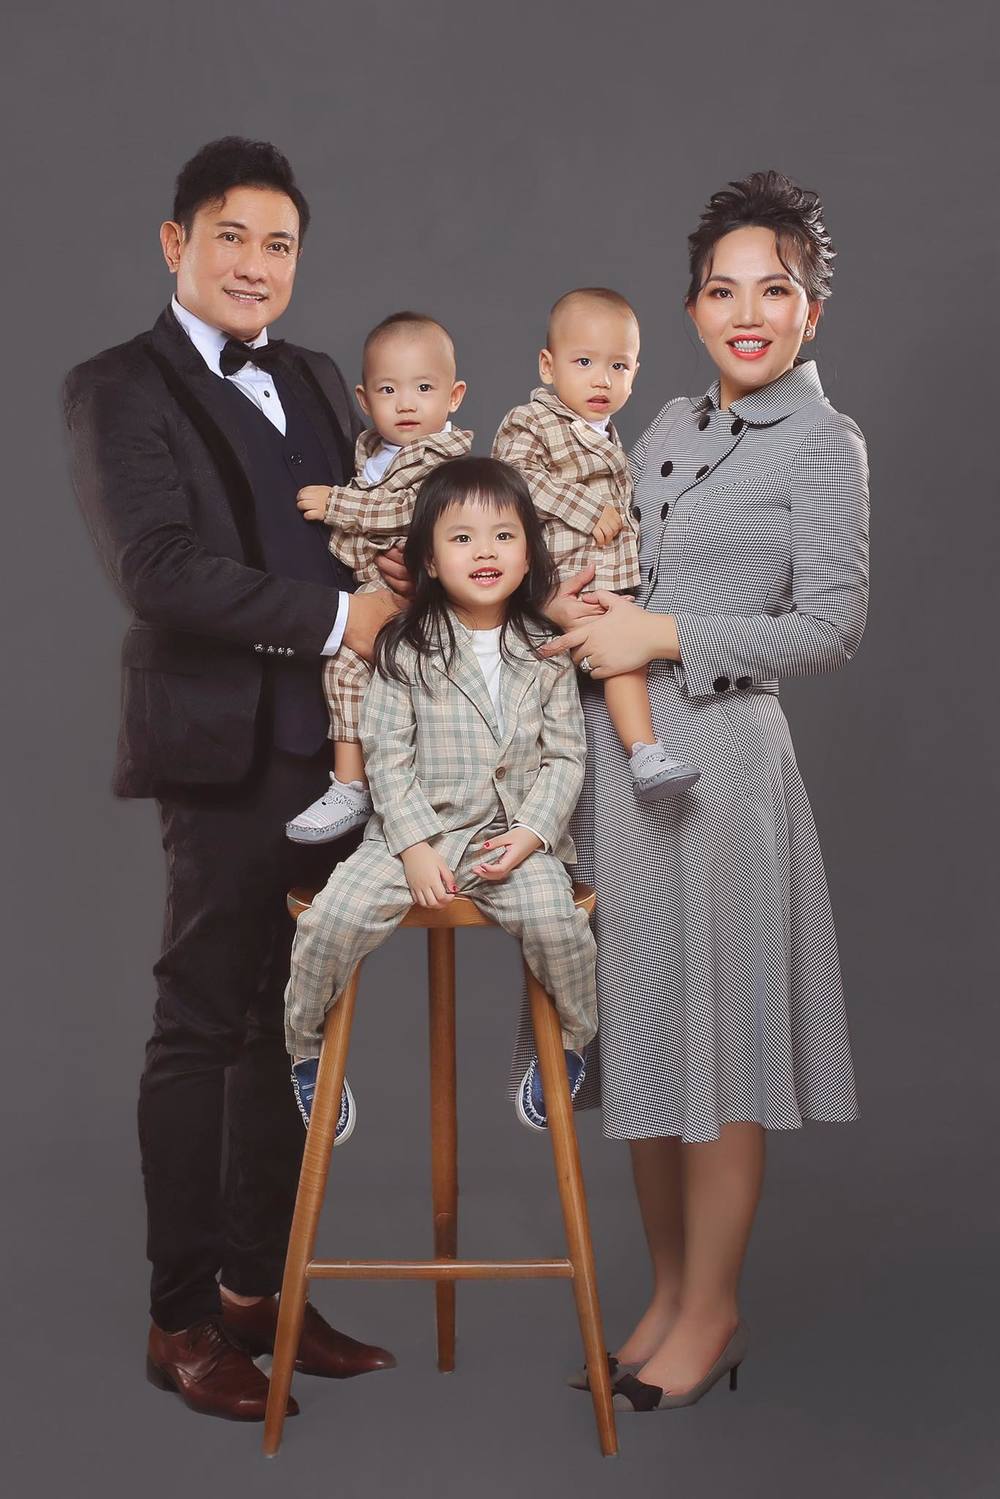  Hoàng Phúc hạnh phúc bên vợ  trẻ và các con khi ở tuổi 50. (Ảnh: FBNV) - Tin sao Viet - Tin tuc sao Viet - Scandal sao Viet - Tin tuc cua Sao - Tin cua Sao